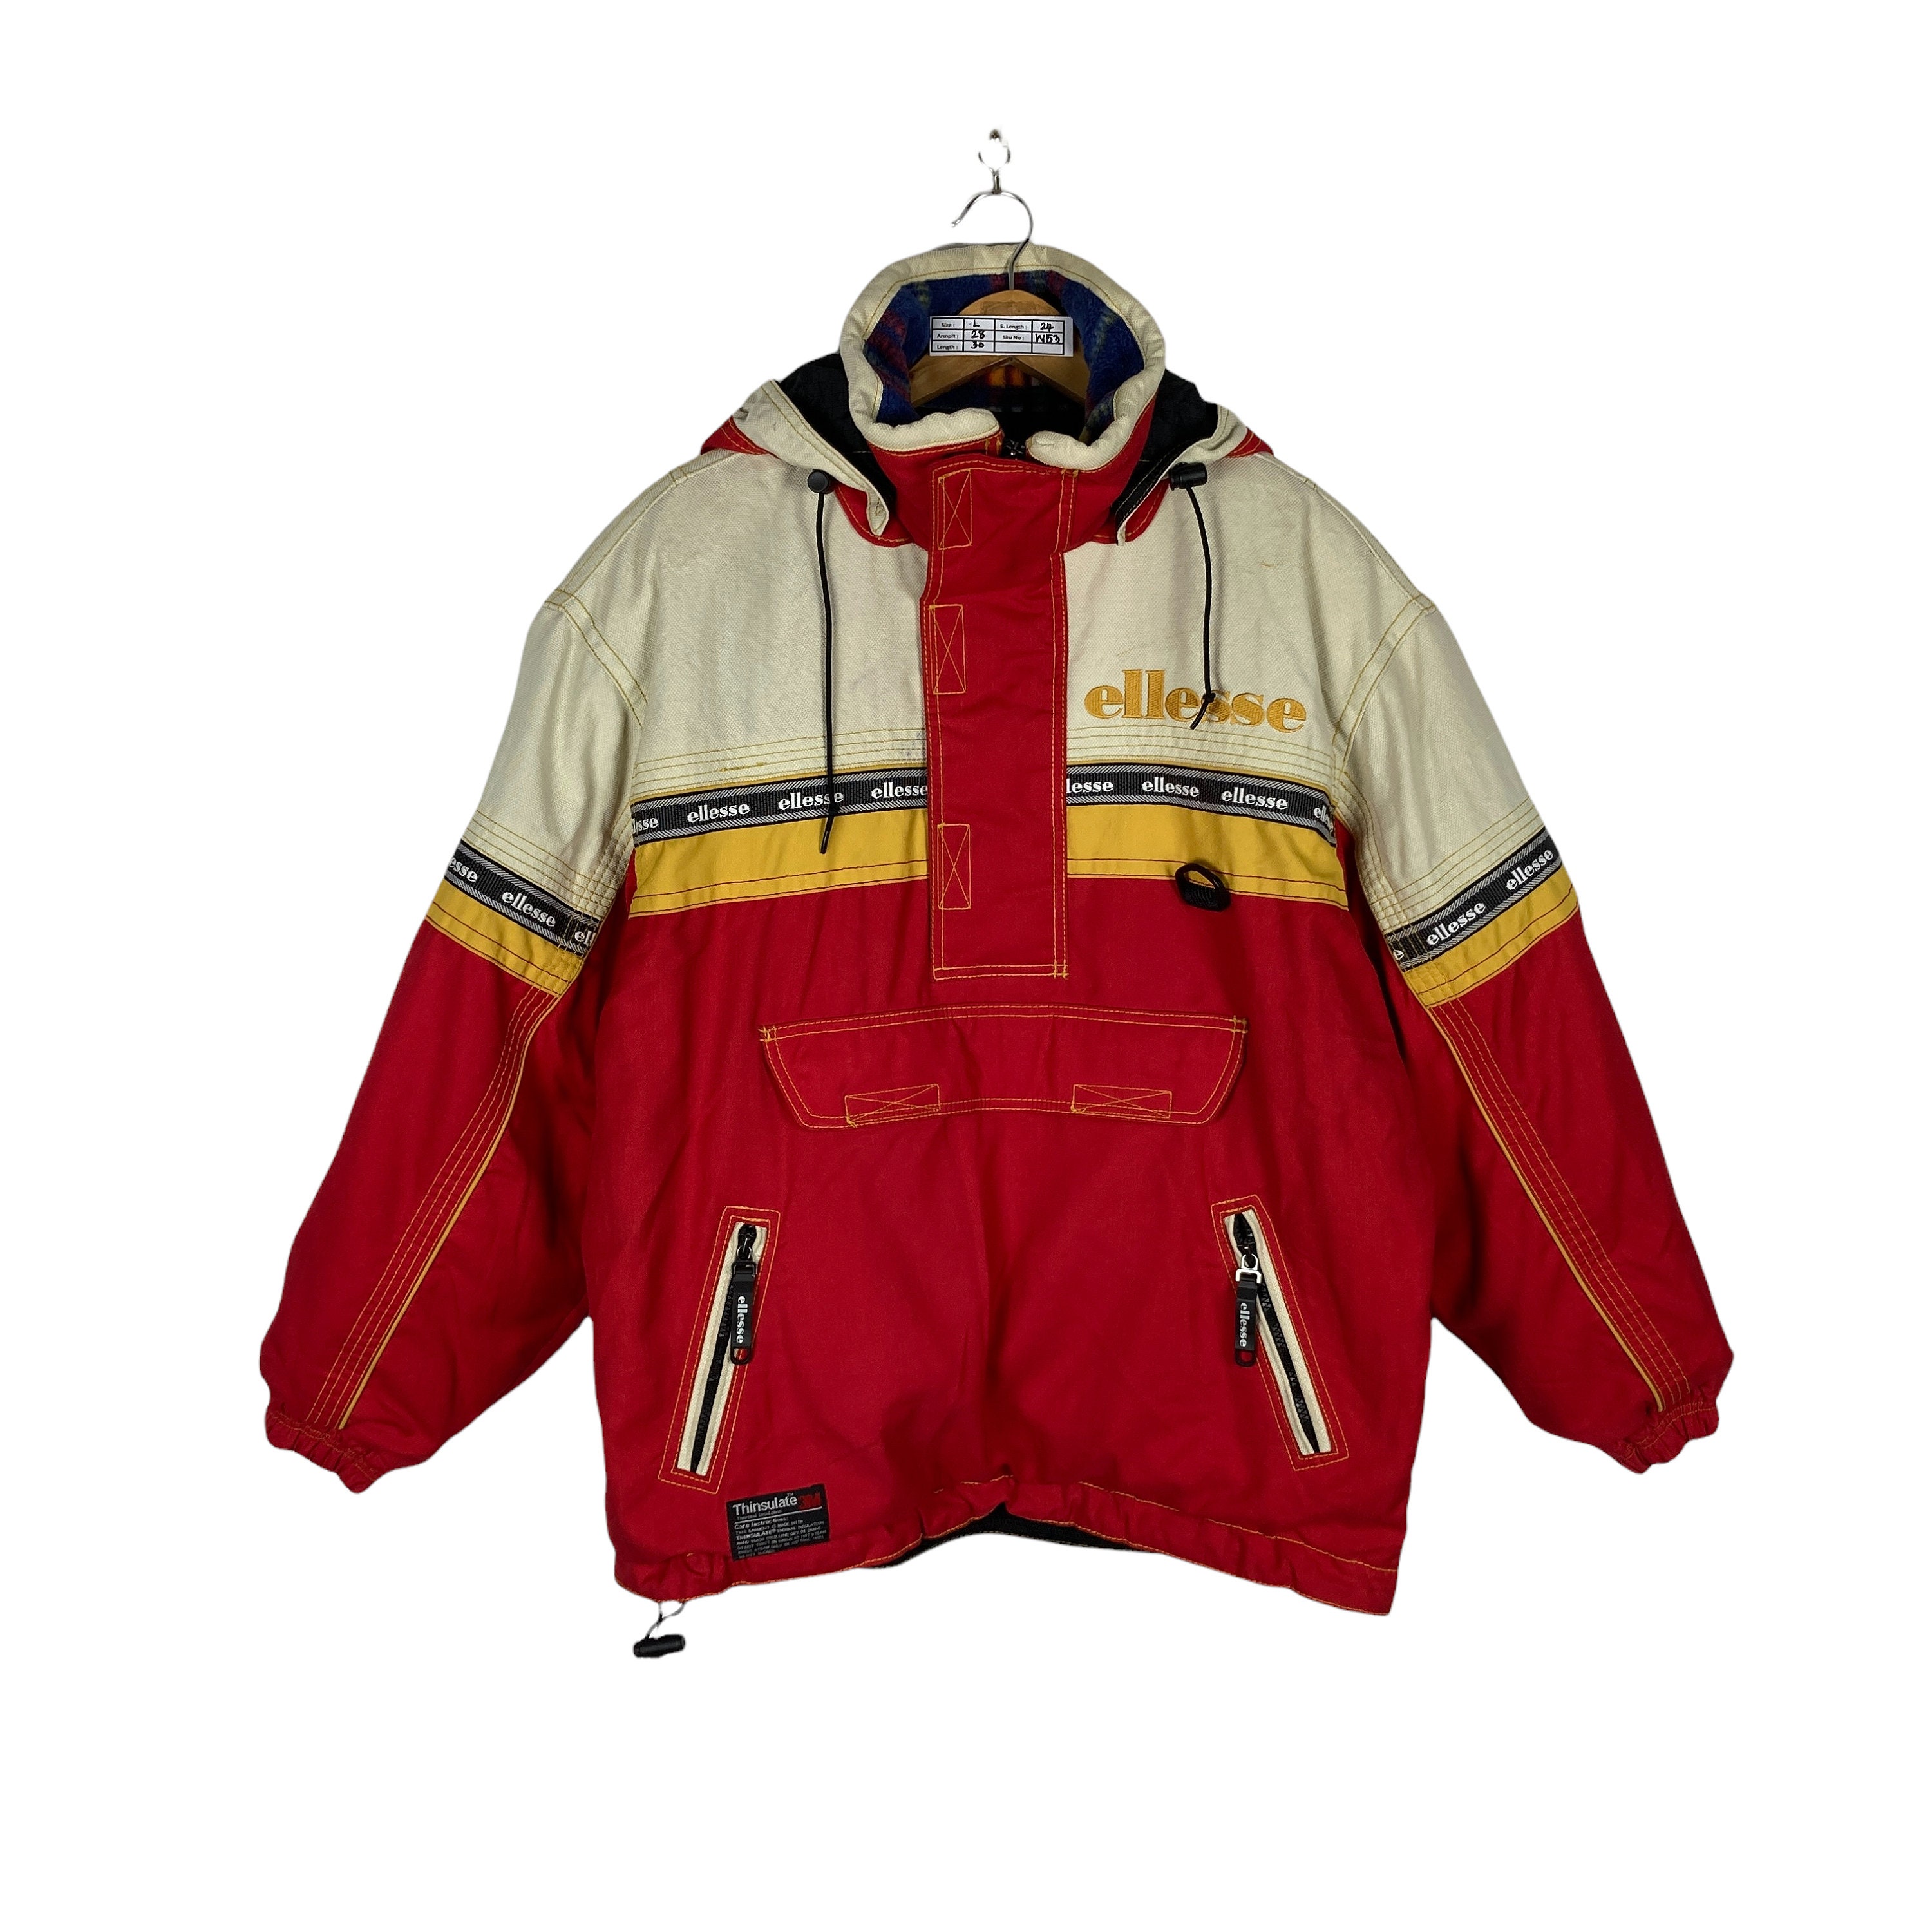 Ellesse Ski Suit Overall Jacket Large Vintage 90s Ellesse Etsy Hong